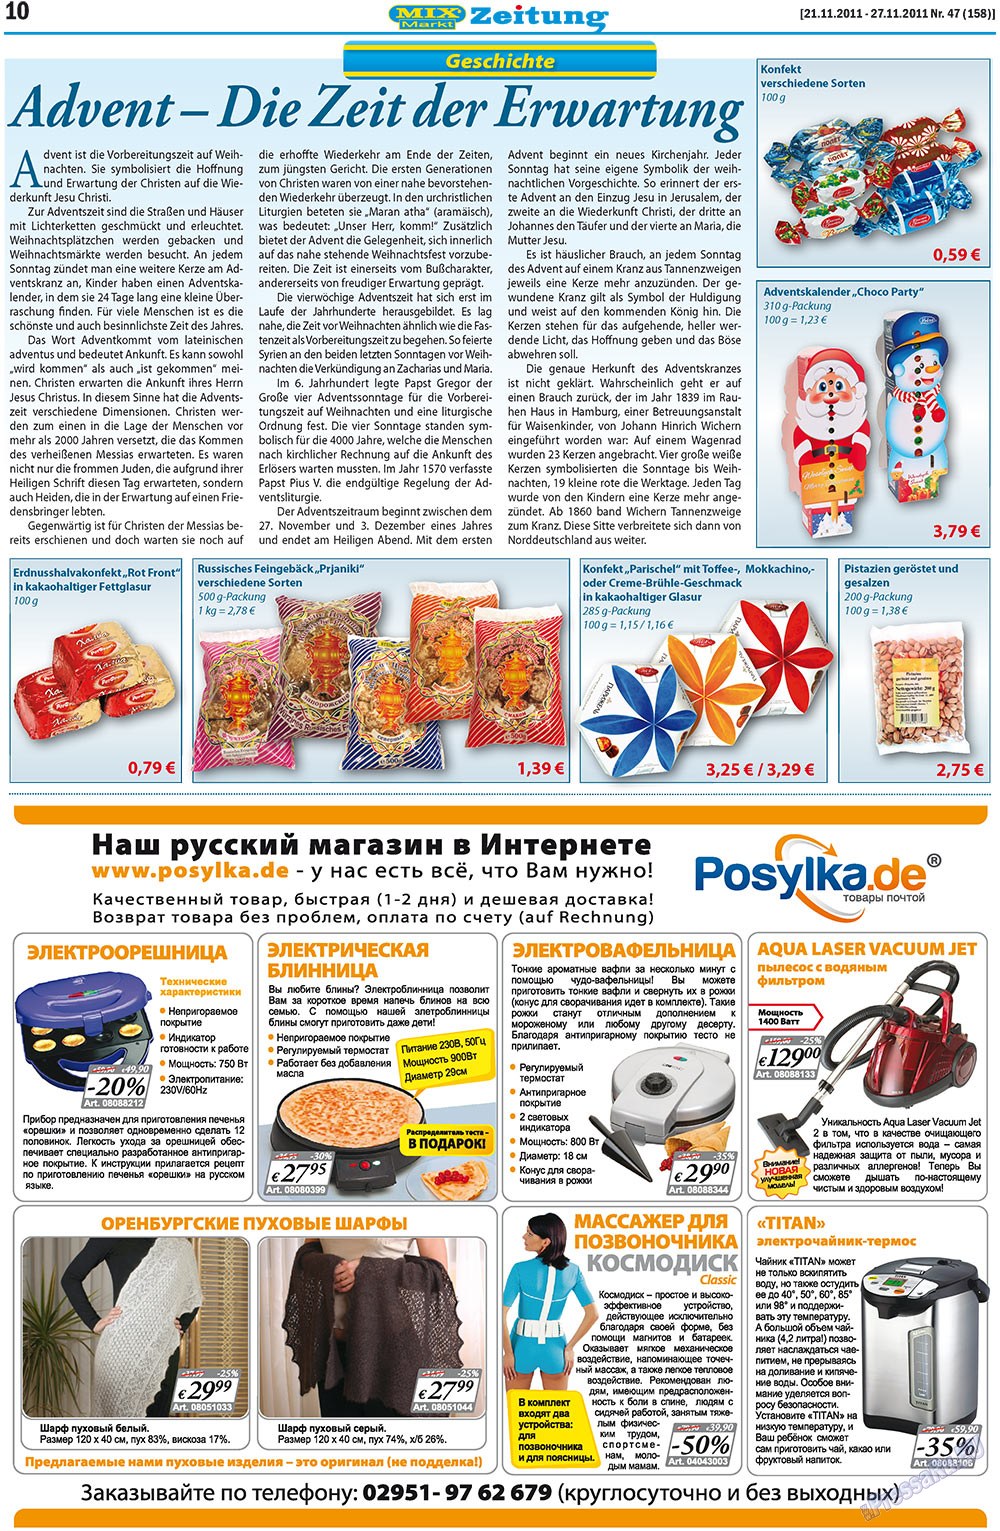 MIX-Markt Zeitung, газета. 2011 №47 стр.10